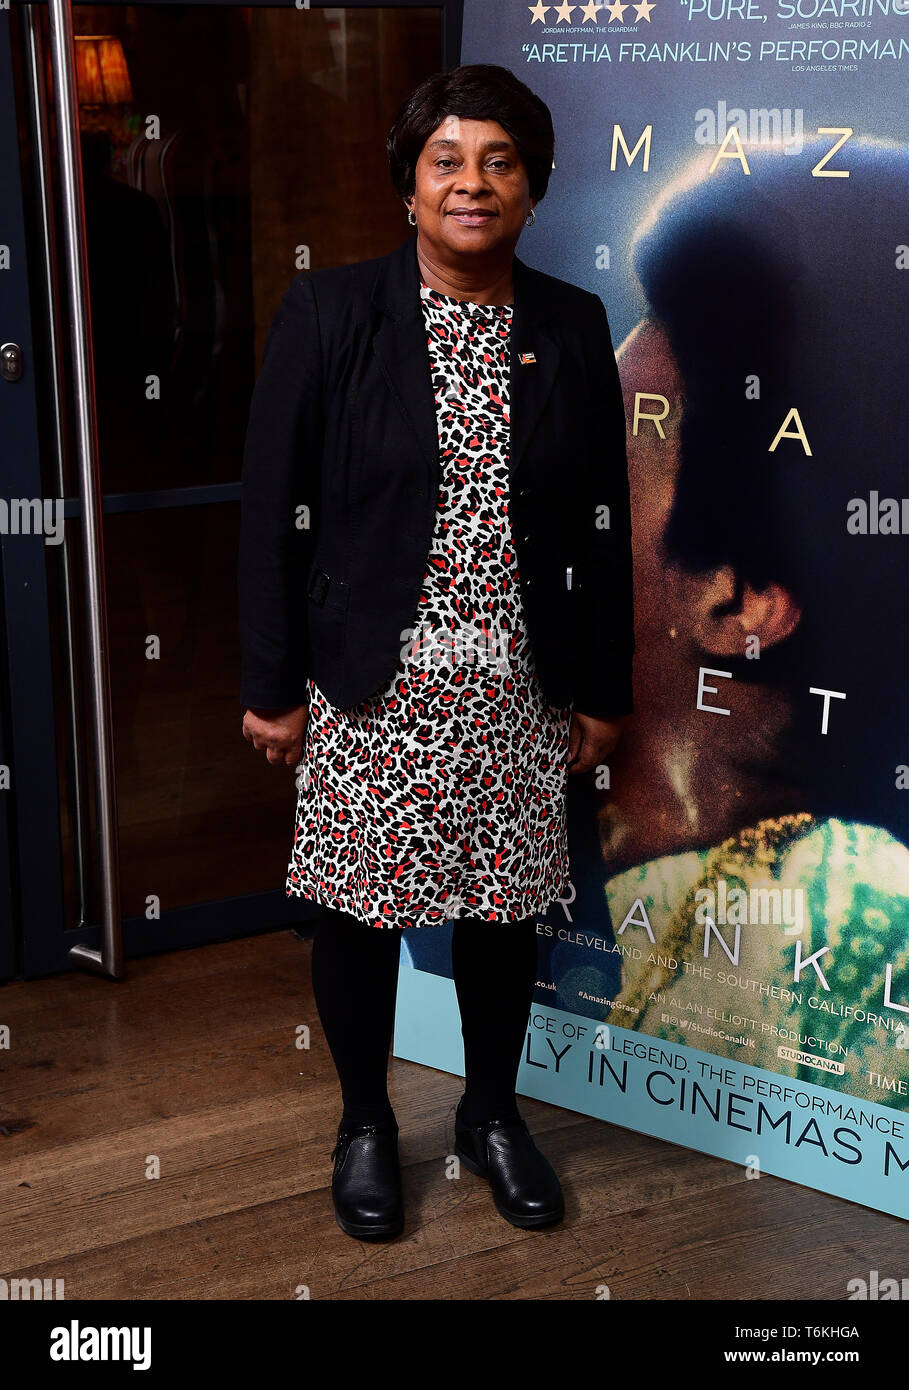 Doreen Lawrence che frequentano lo screening di Aretha Franklin documentario Amazing Grace, al prosciutto Yard Hotel, Londra. Foto Stock